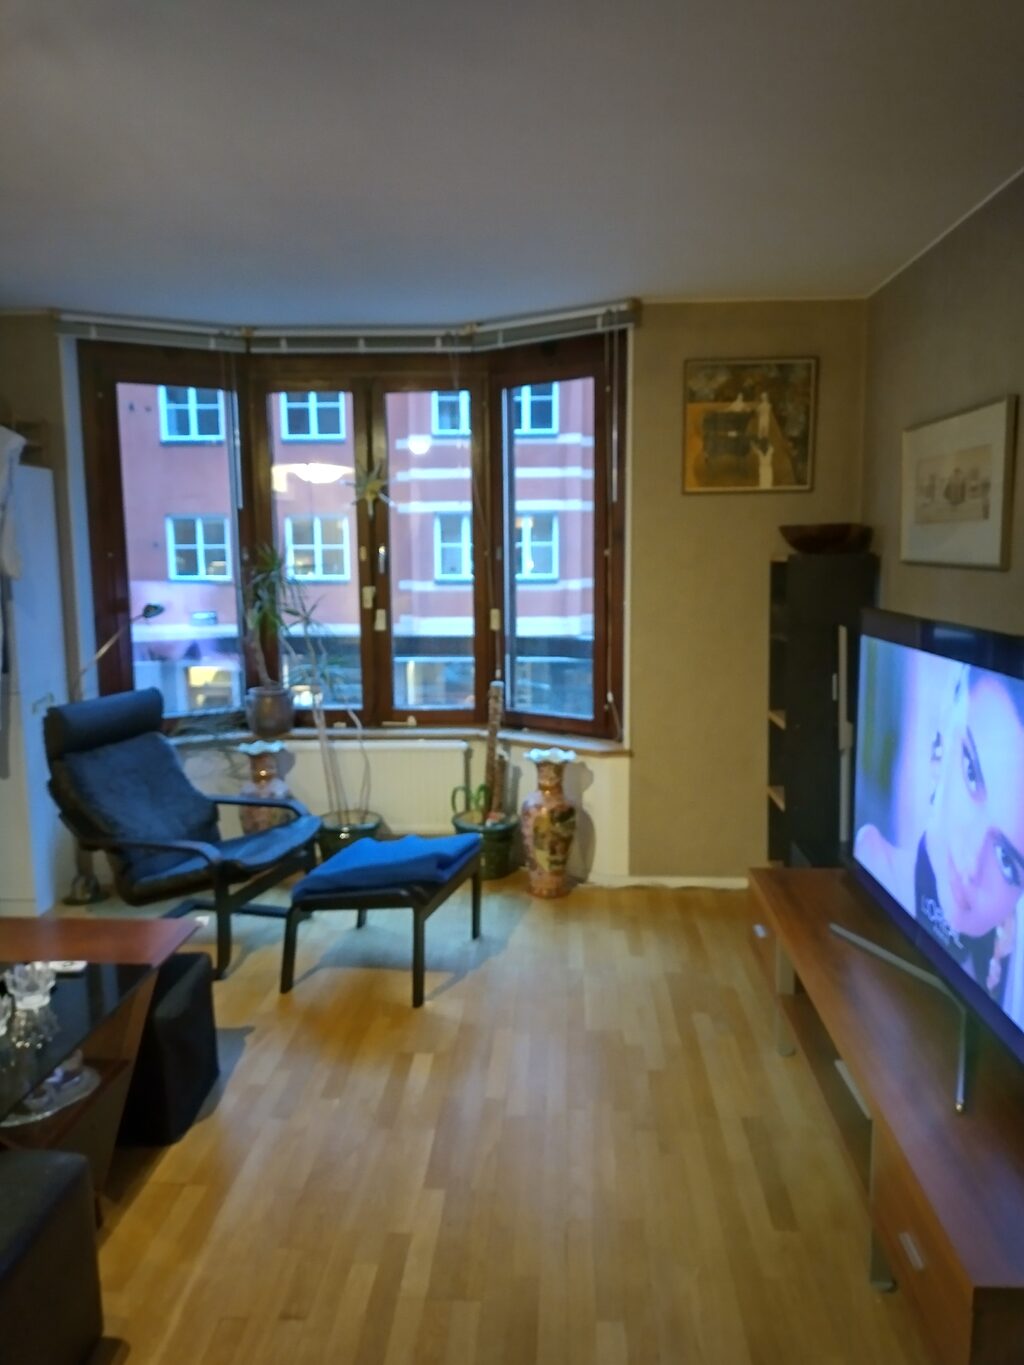 Lägenhetsbyte - Blekingegatan 15D, 118 56 Stockholm